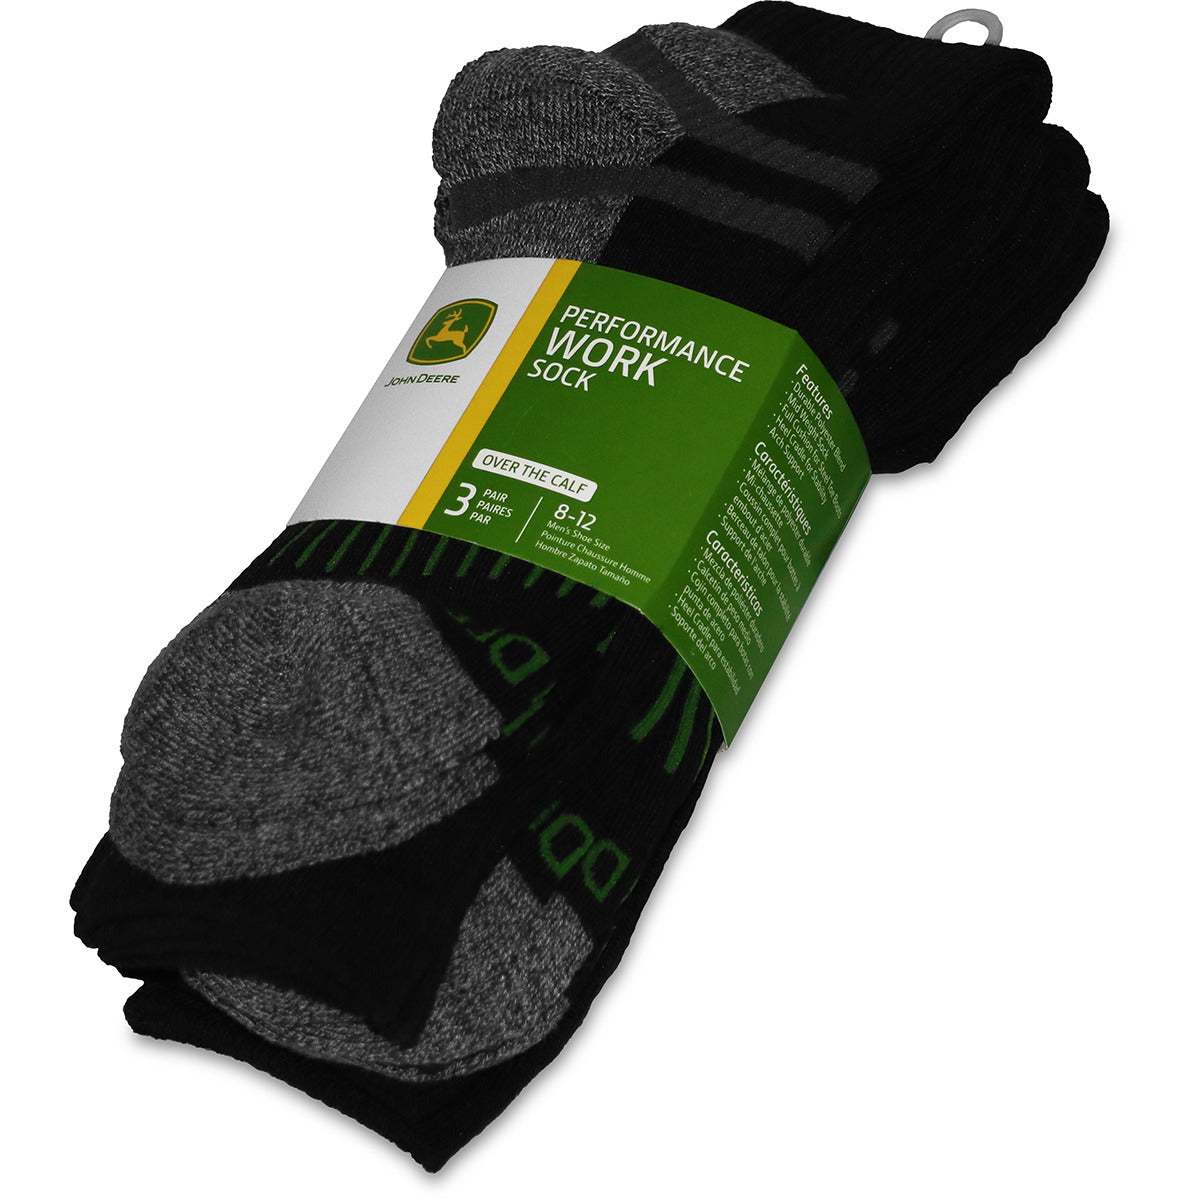 John Deere Men's 3 Pack Performance Work Sock (Gray/Black)(Over The Calf) - LP73321